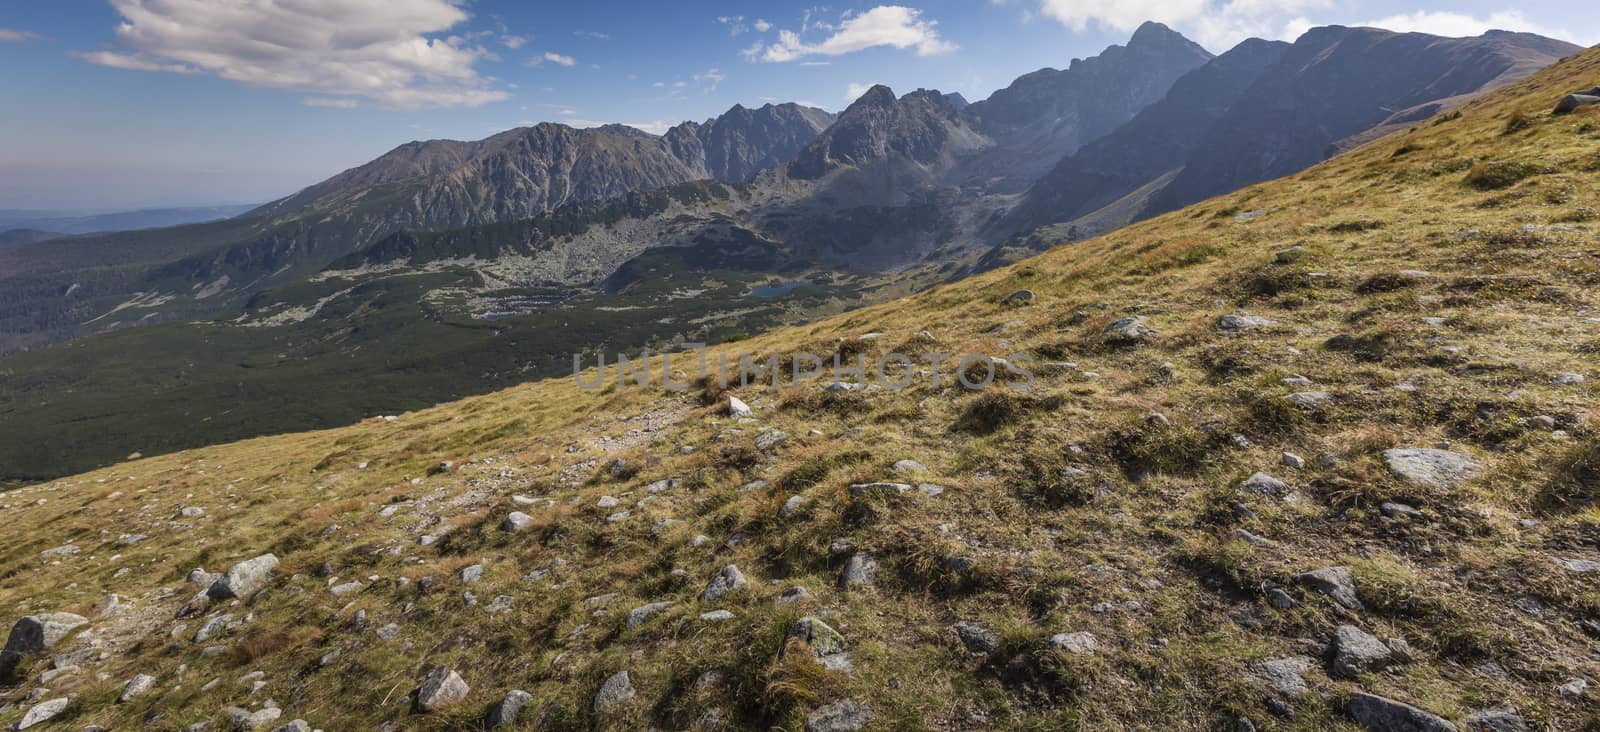 View from Kasprowy Wierch Summit in the Polish Tatra Mountains by mariusz_prusaczyk